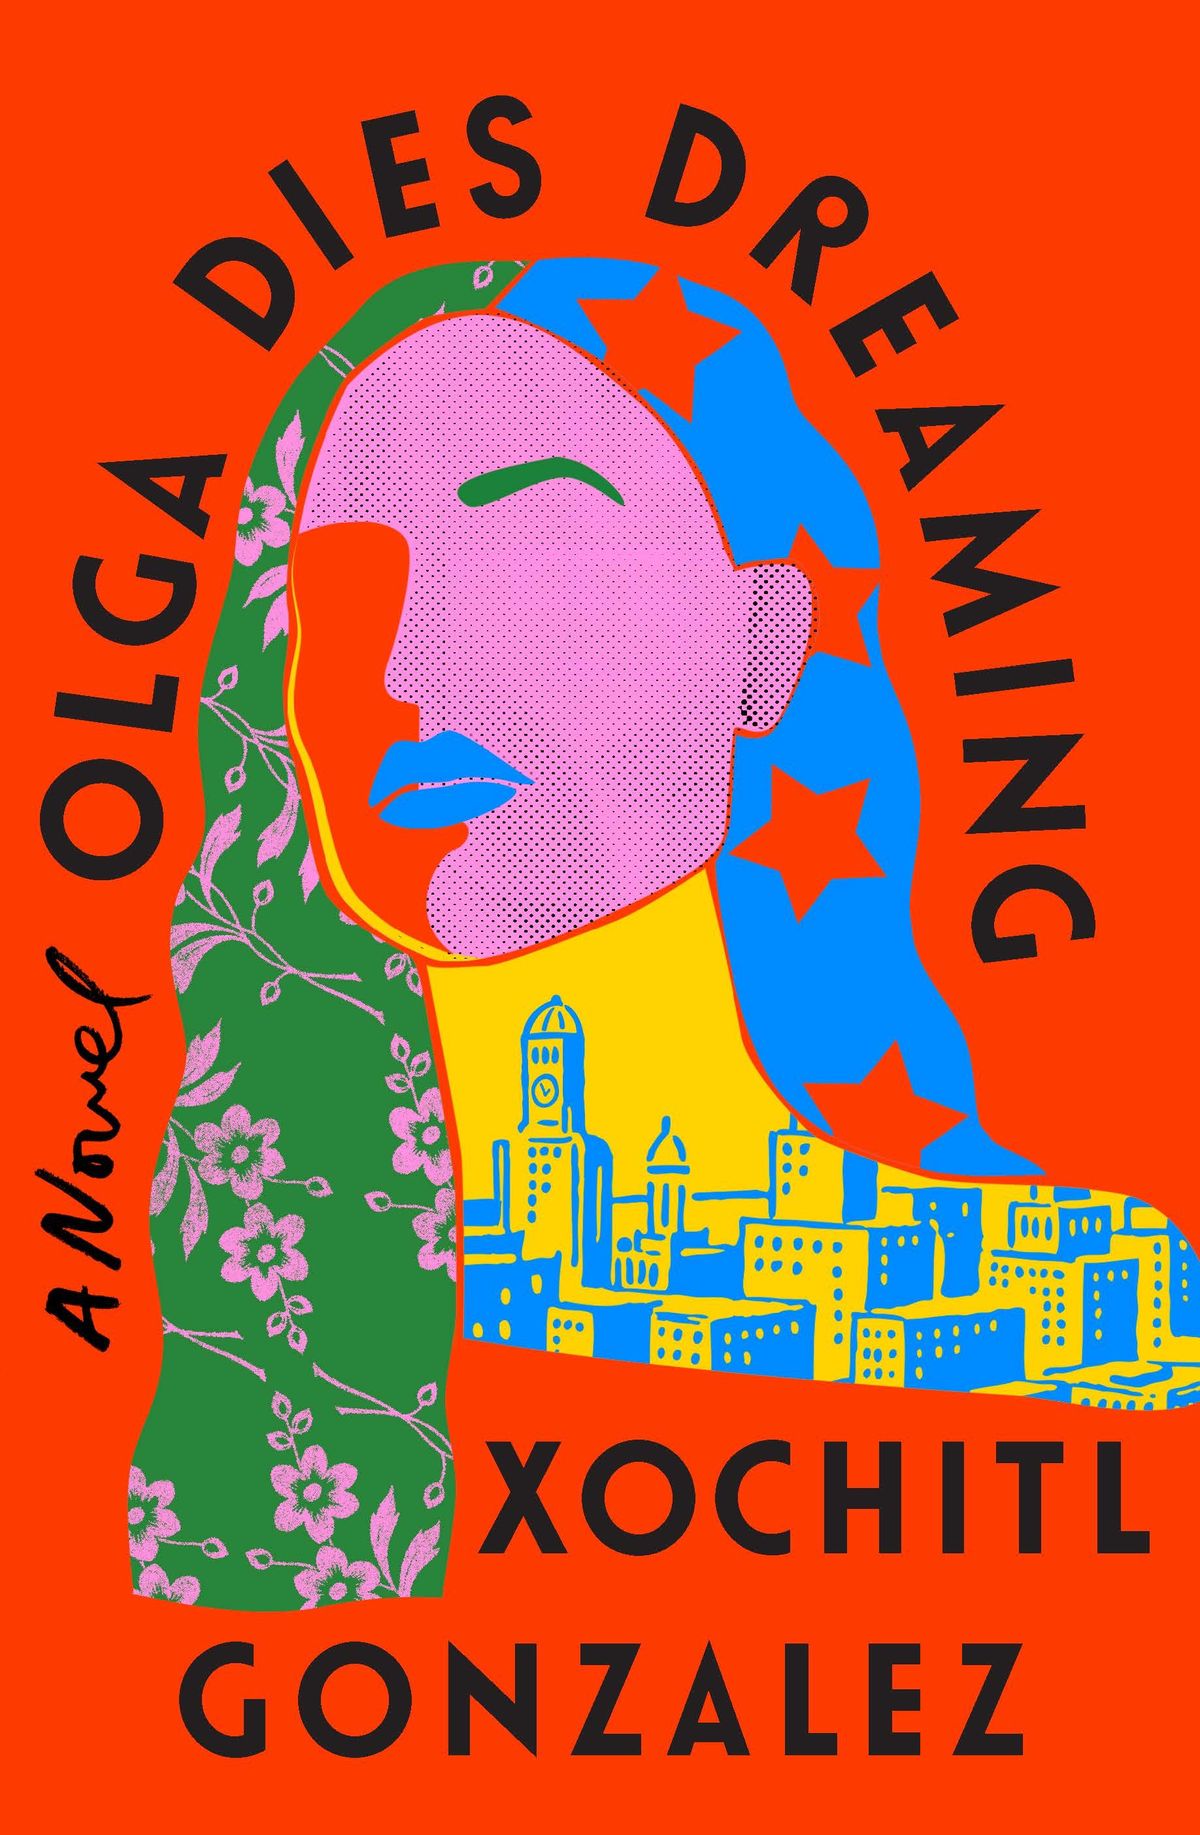 Leggi le prime pagine dell'attesissimo debutto di Xochitl Gonzalez, Olga muore sognando